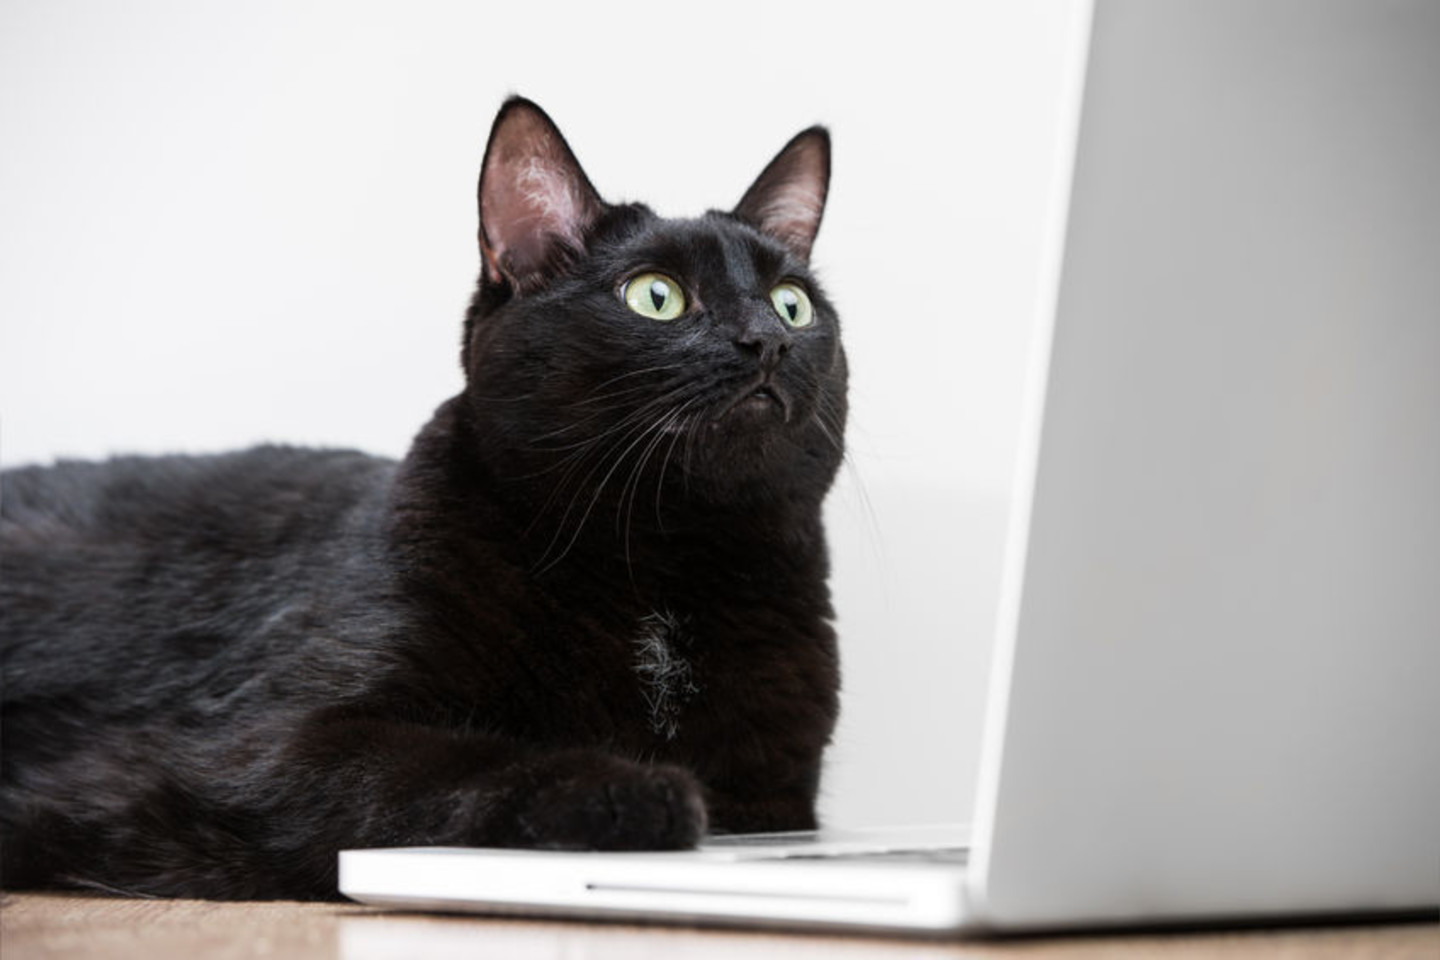 Kol jūsų nebūna namie, katės pasinaudoja ir jūsų kompiuteriu, keldamos į „YouTube“ vaizdo mokymus kitoms katėms.<br>123rf nuotr.